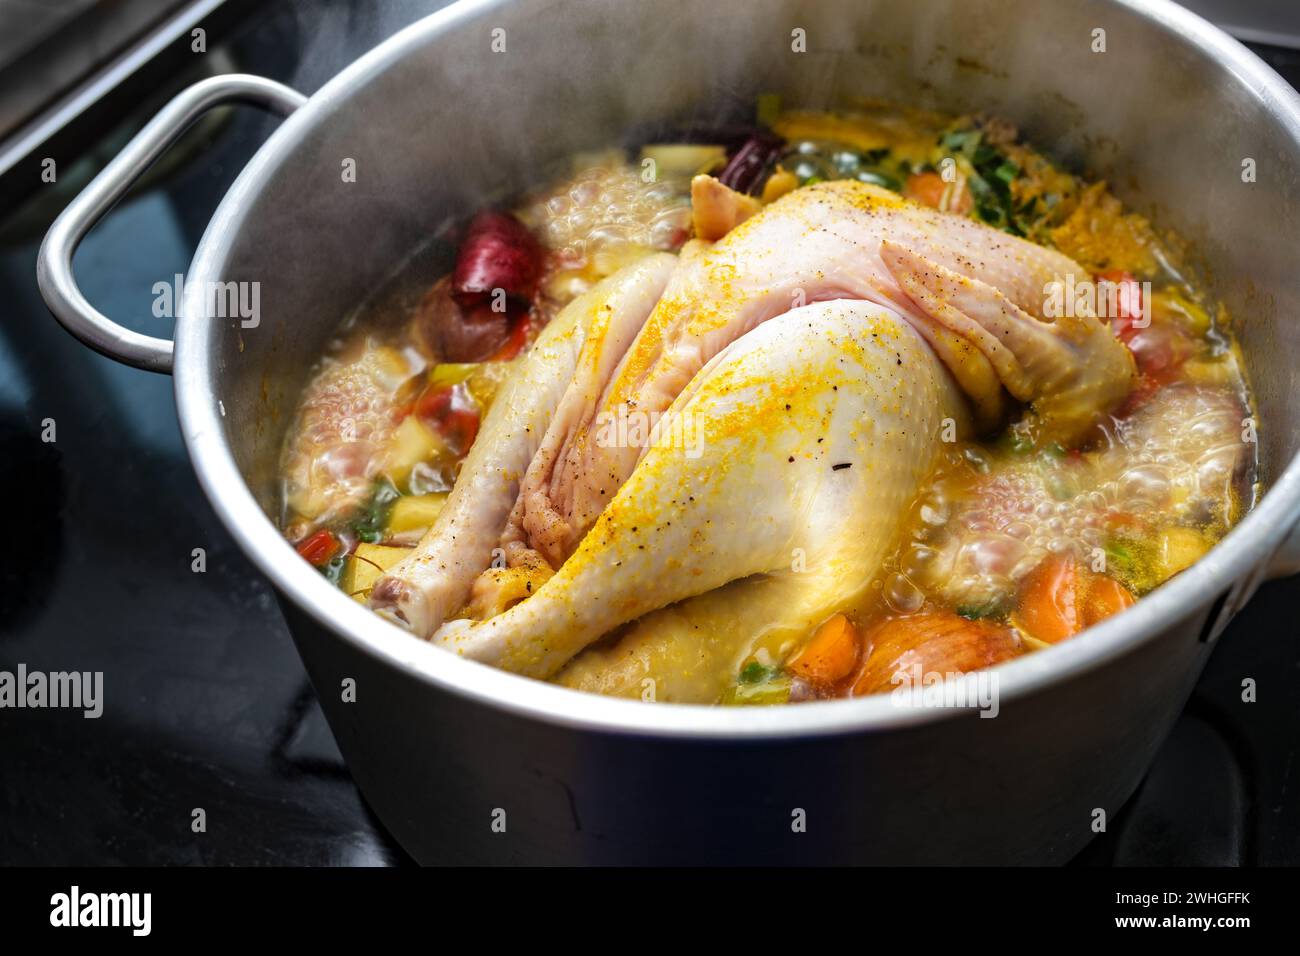 La zuppa di pollo con verdure e spezie sta bollendo in una pentola, cucinando un brodo sano, rimedio casalingo contro il raffreddore e l'influenza, selezionato Foto Stock